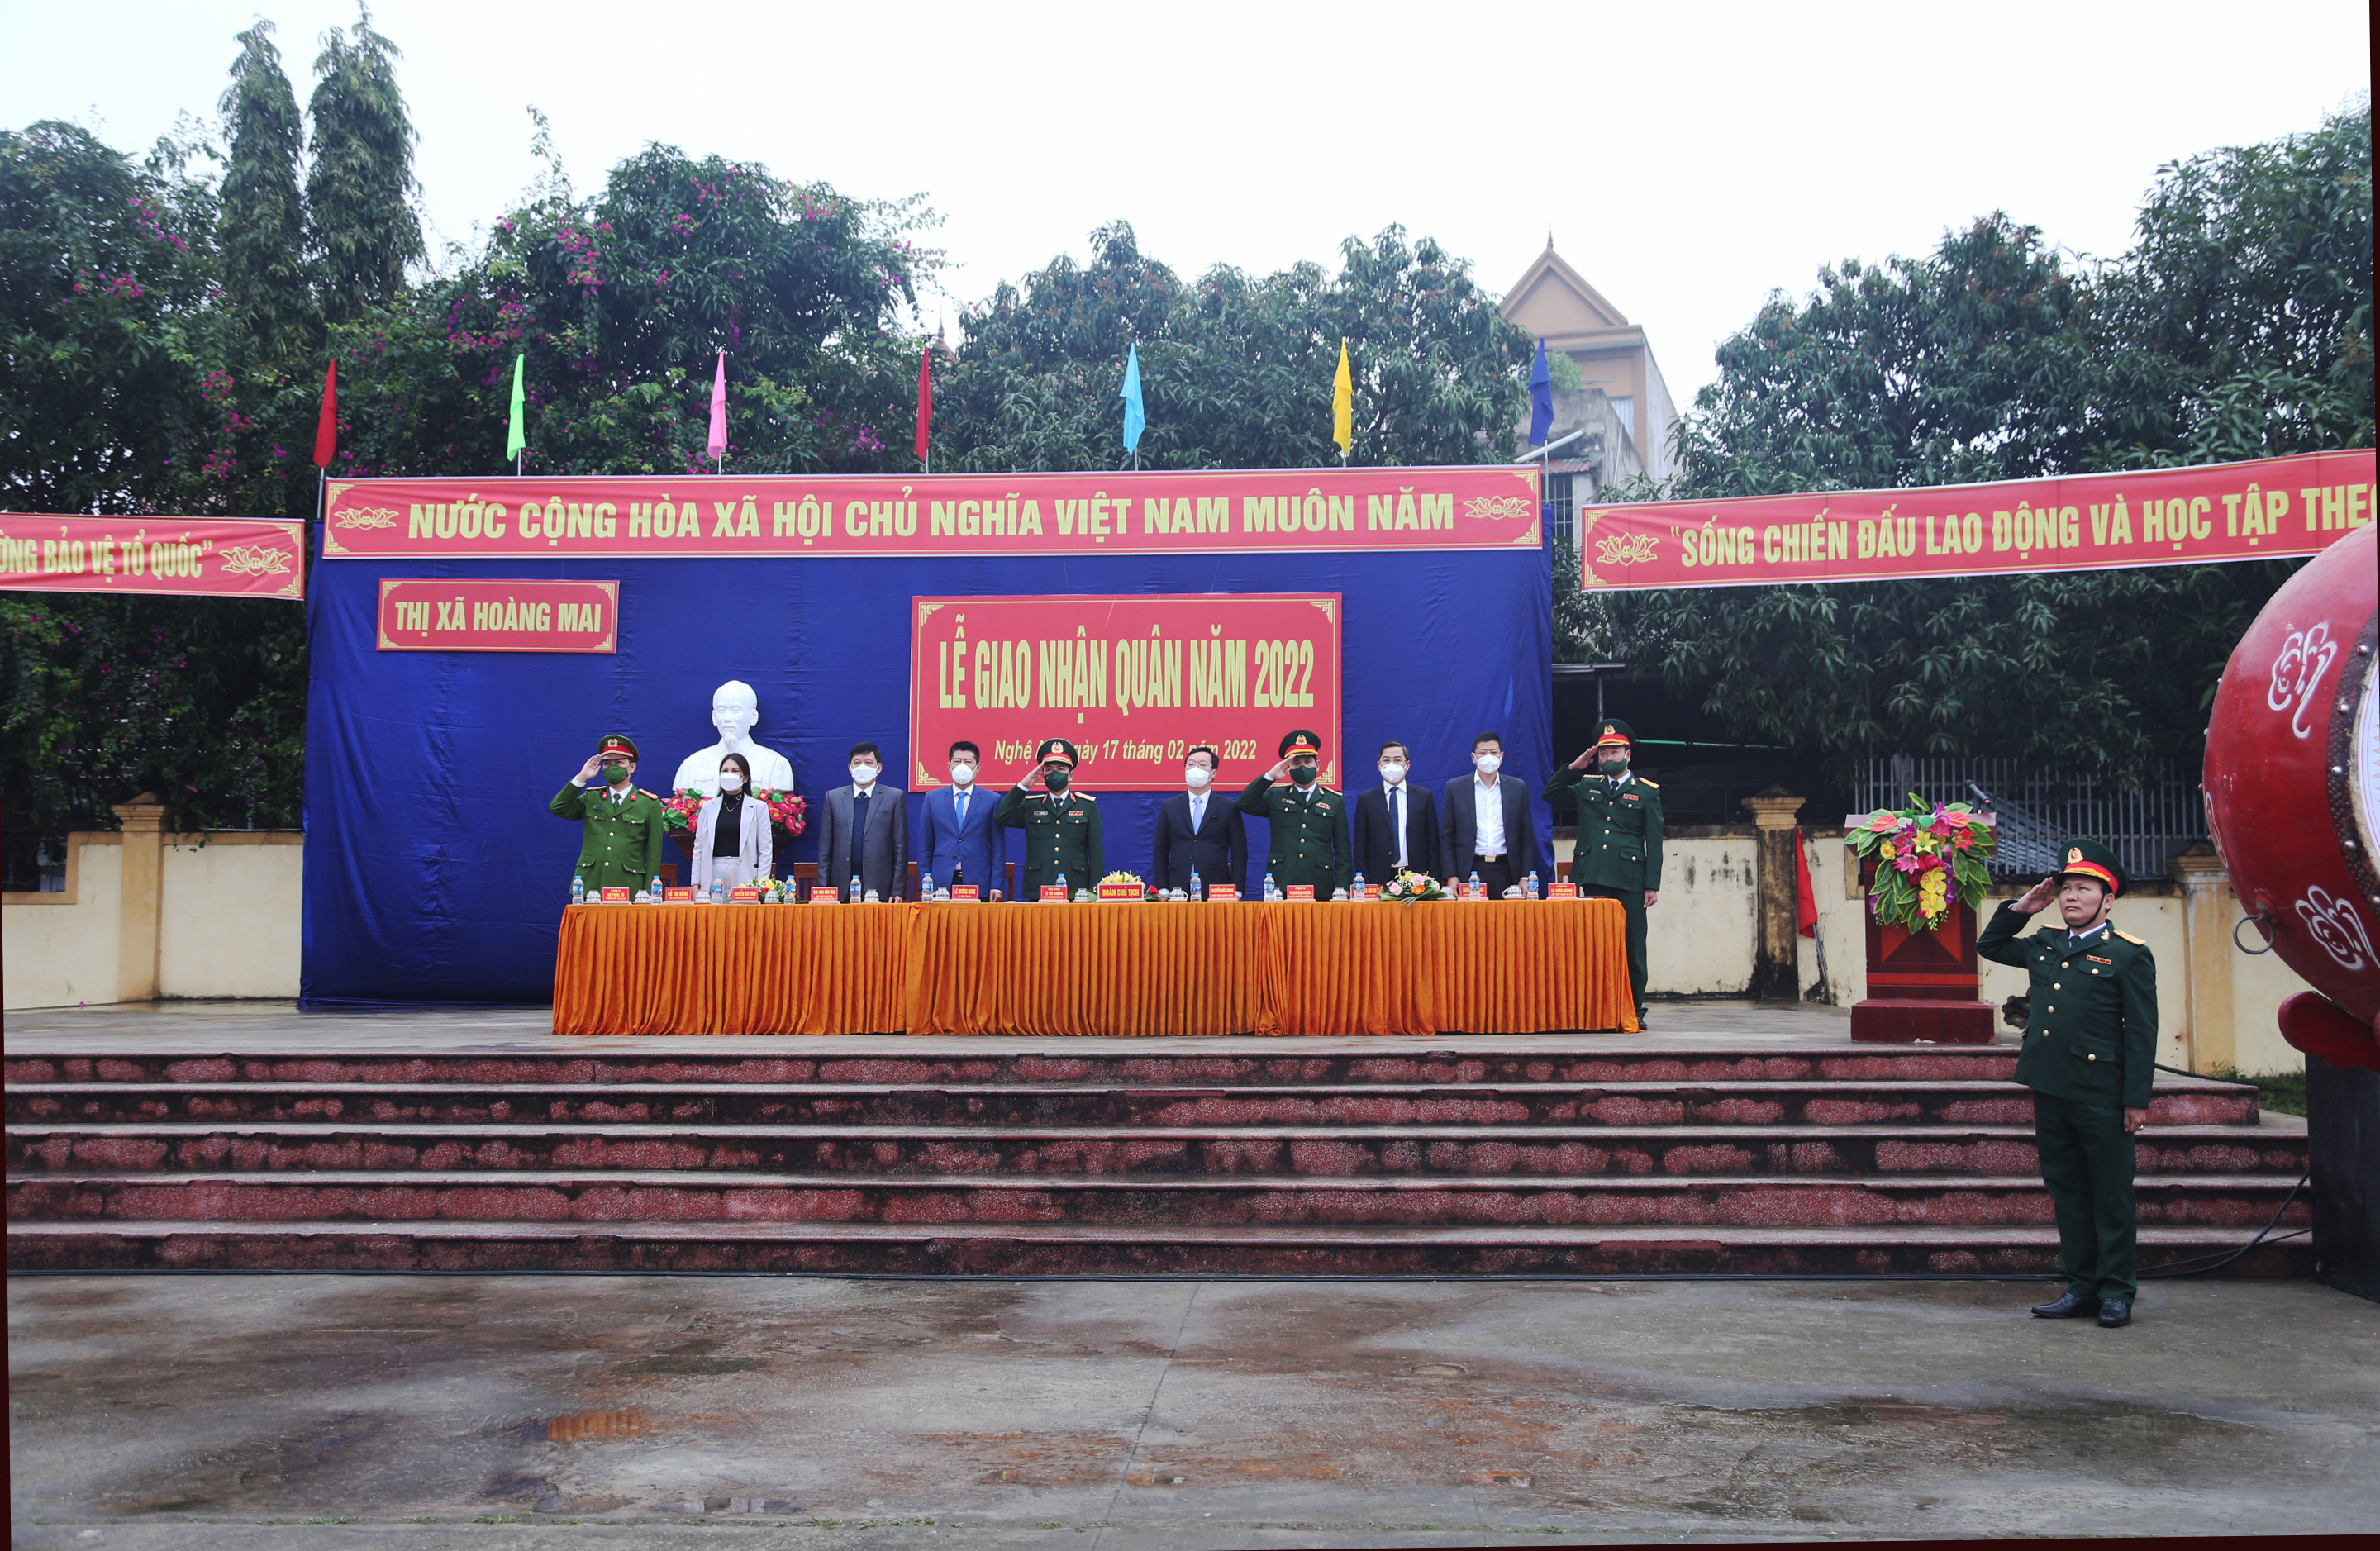 Đoàn Chủ tịch và đại biểu dự buổi lễ thực hiện nghi thức chào cờ. Ảnh: Đào Tuấn 